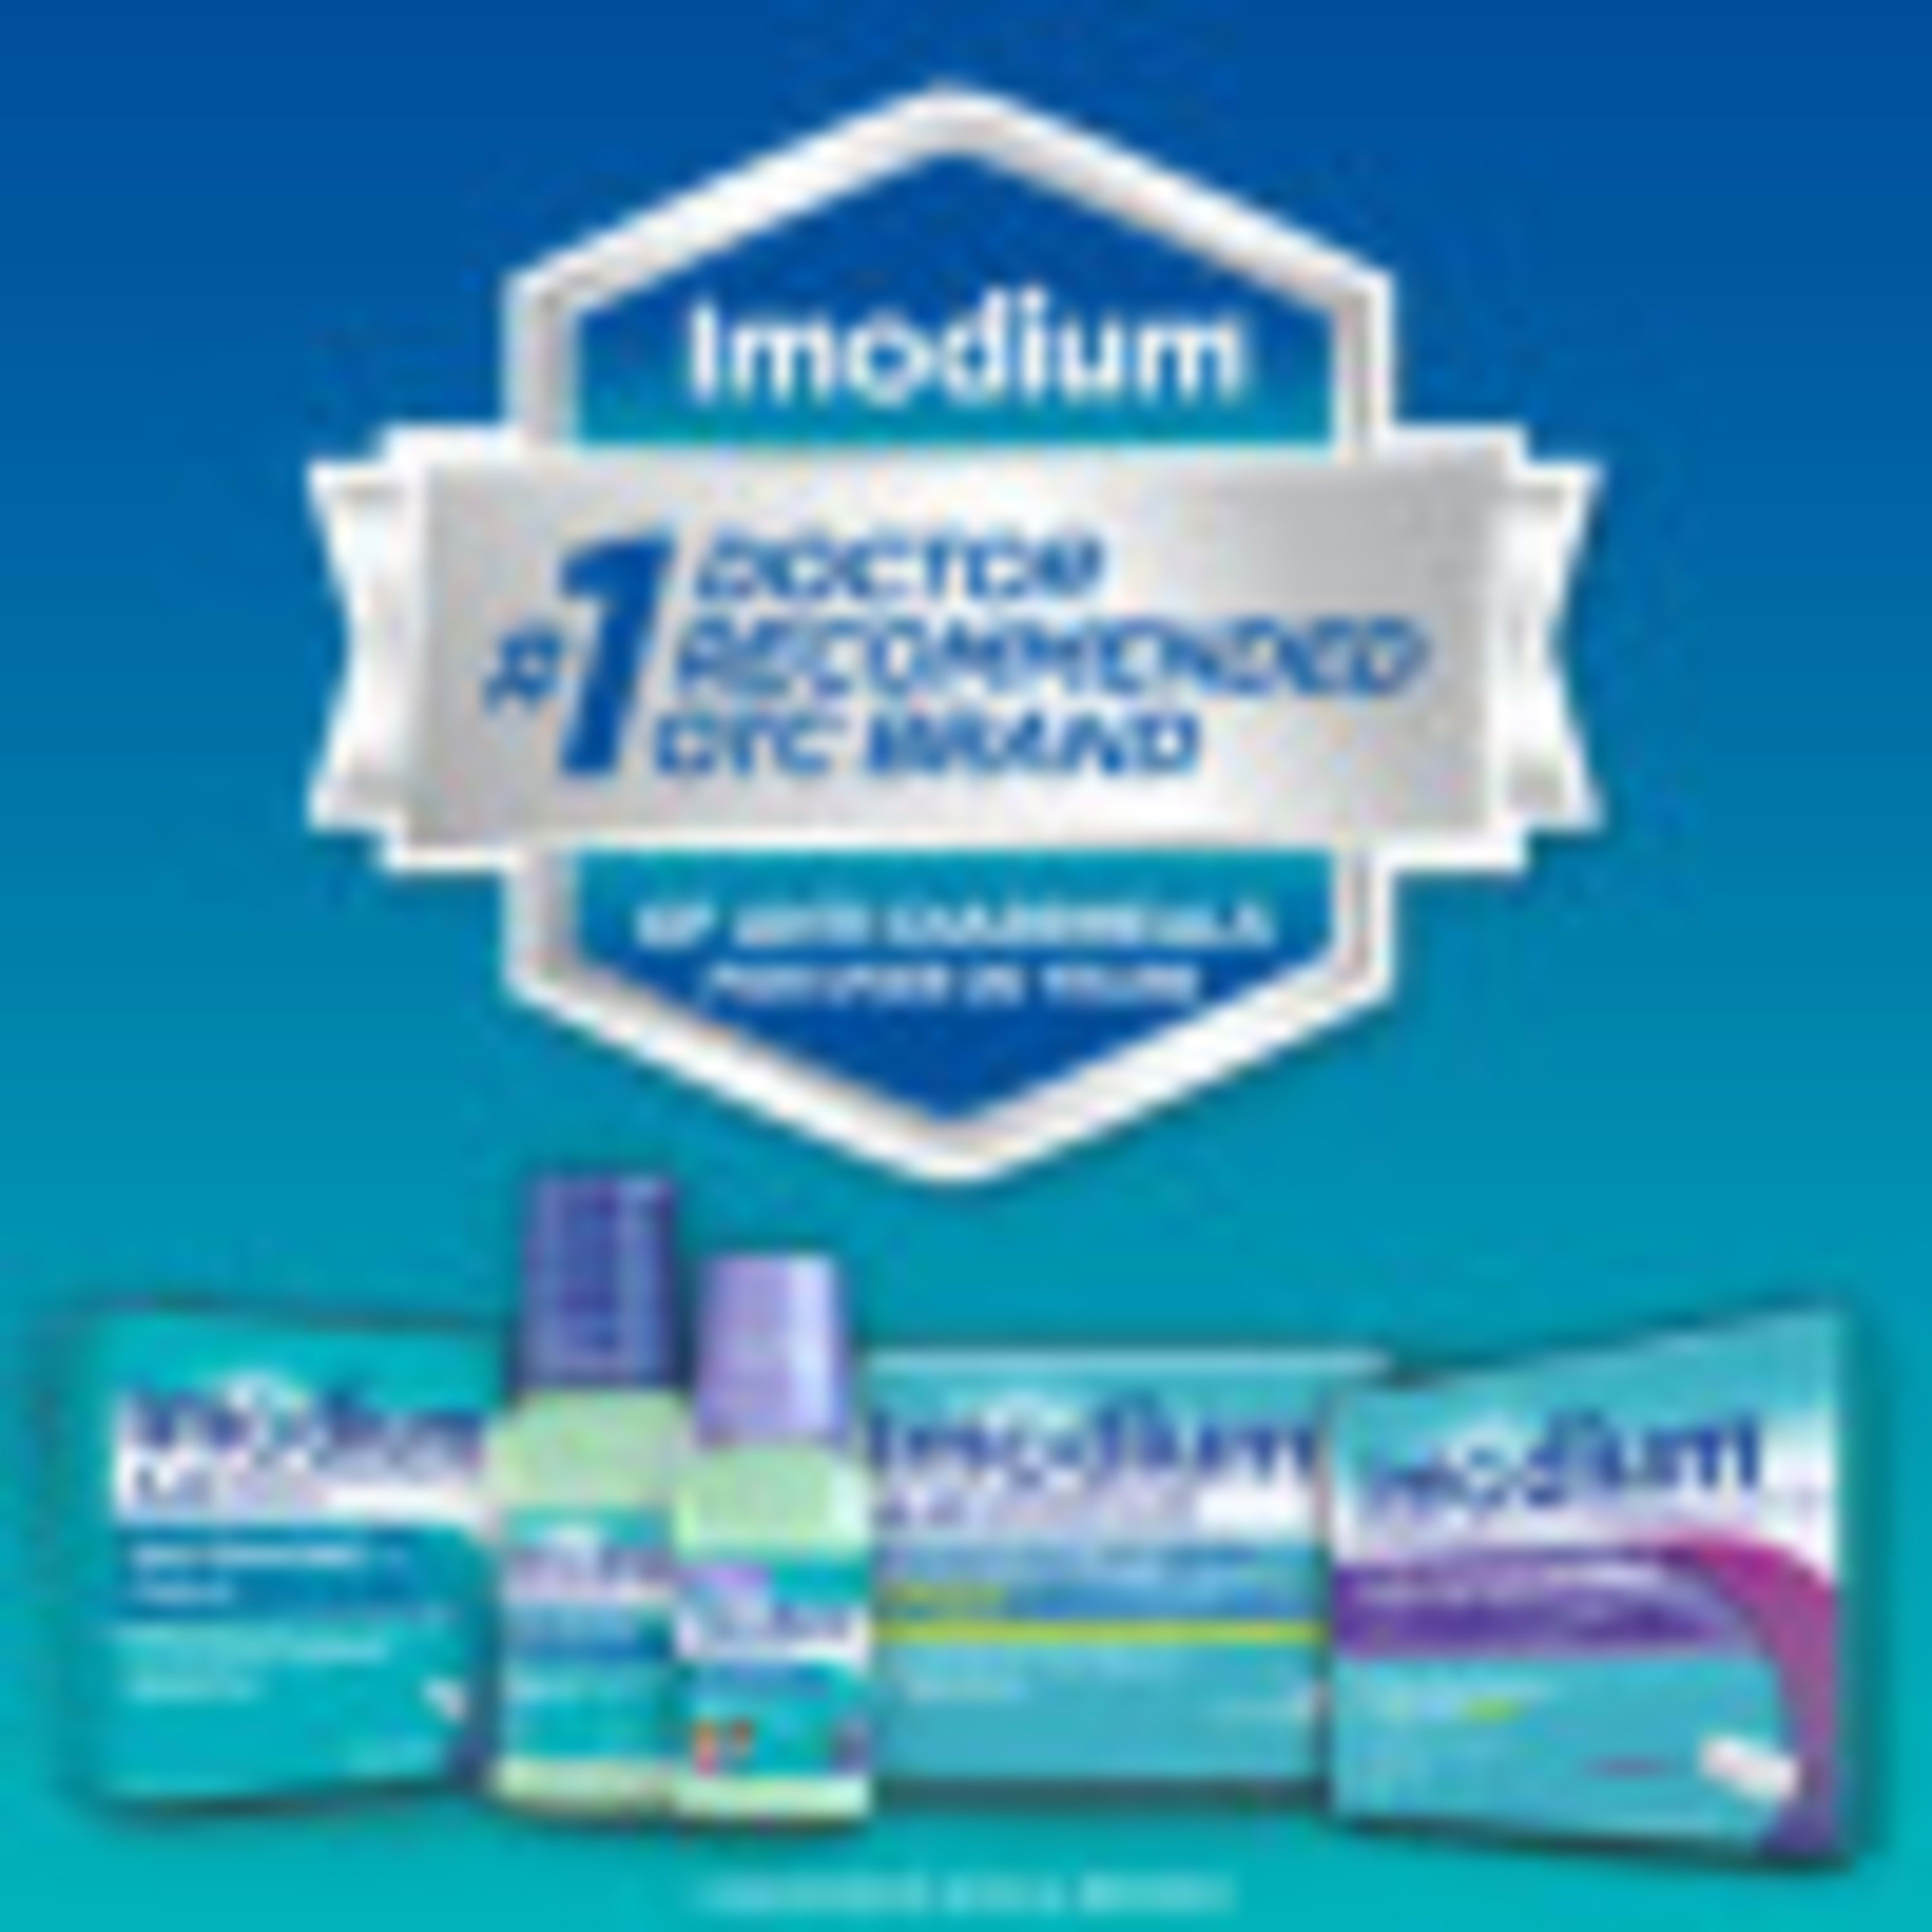 Imodium Multi-Symptom Relief Anti-Diarrheal Medicine Caplets, 12 ct. - image 6 of 13